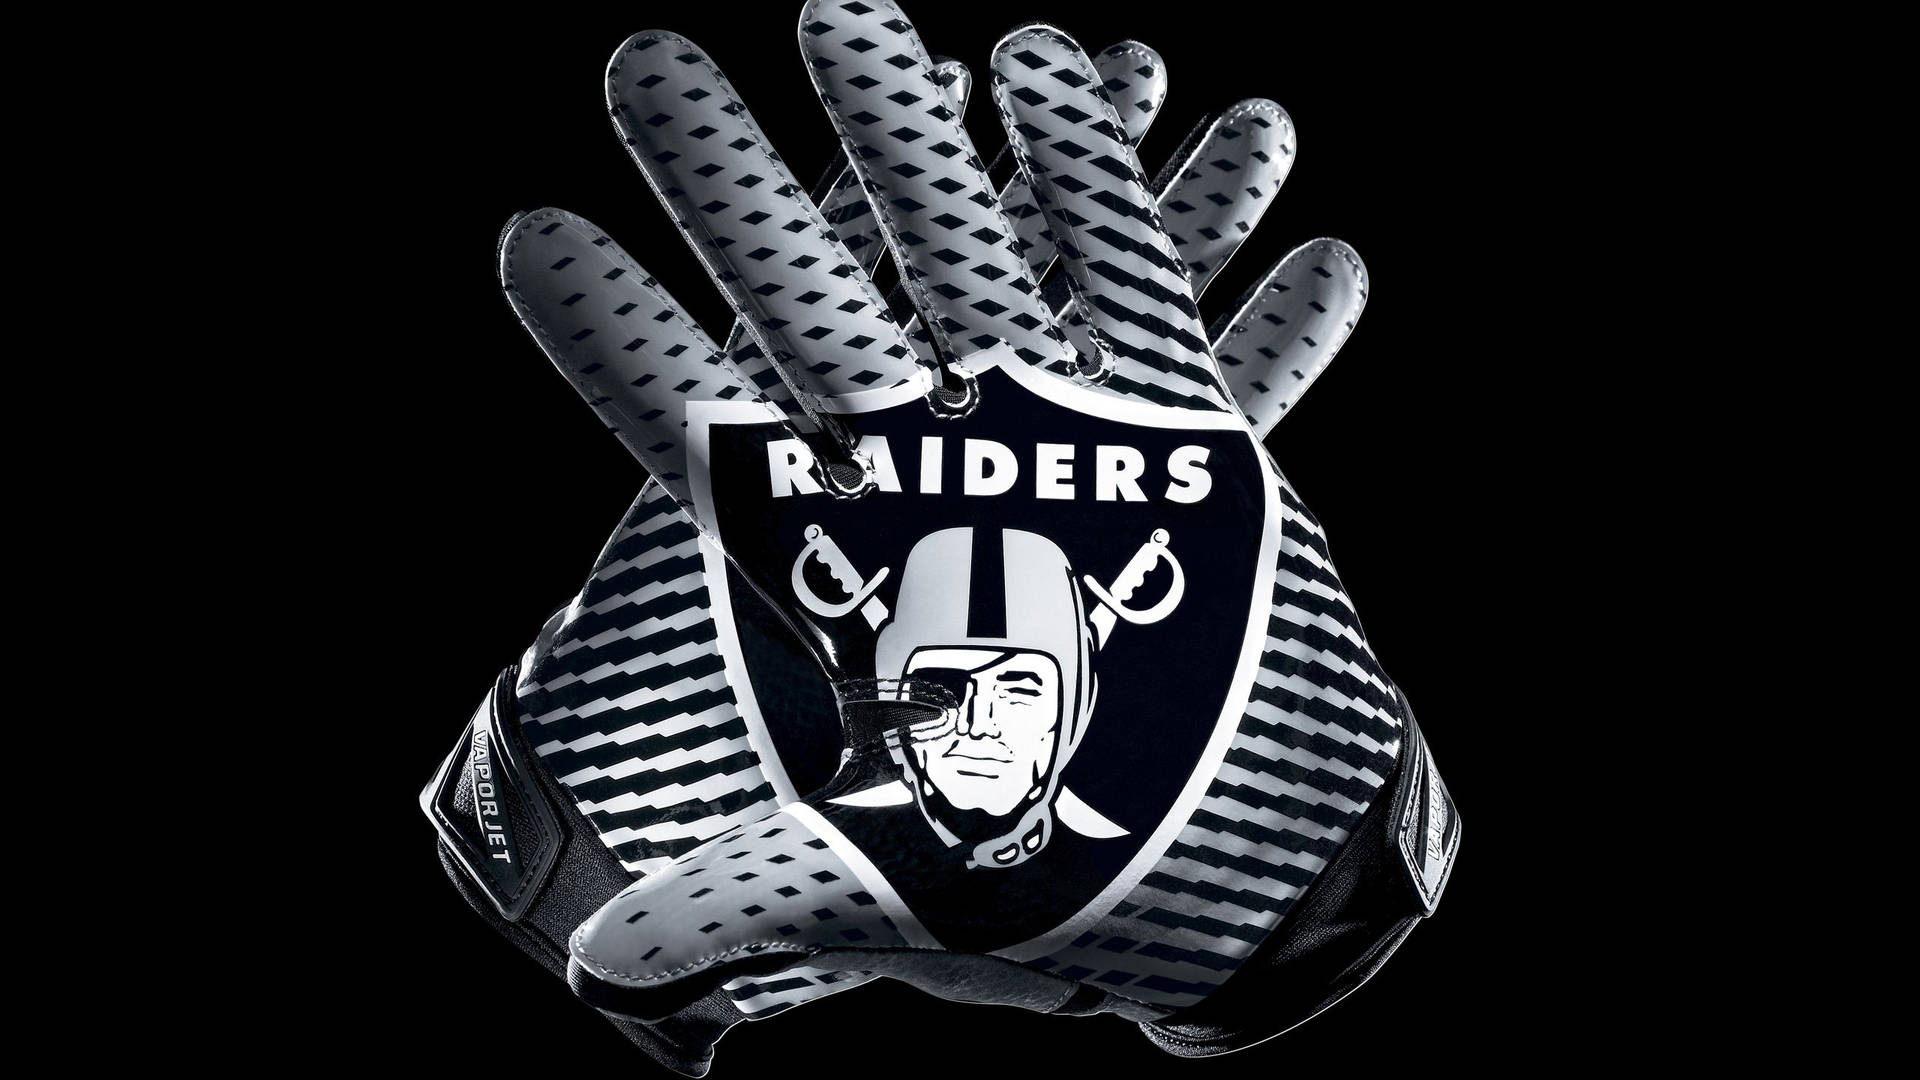 Raider's Player Gloves Background